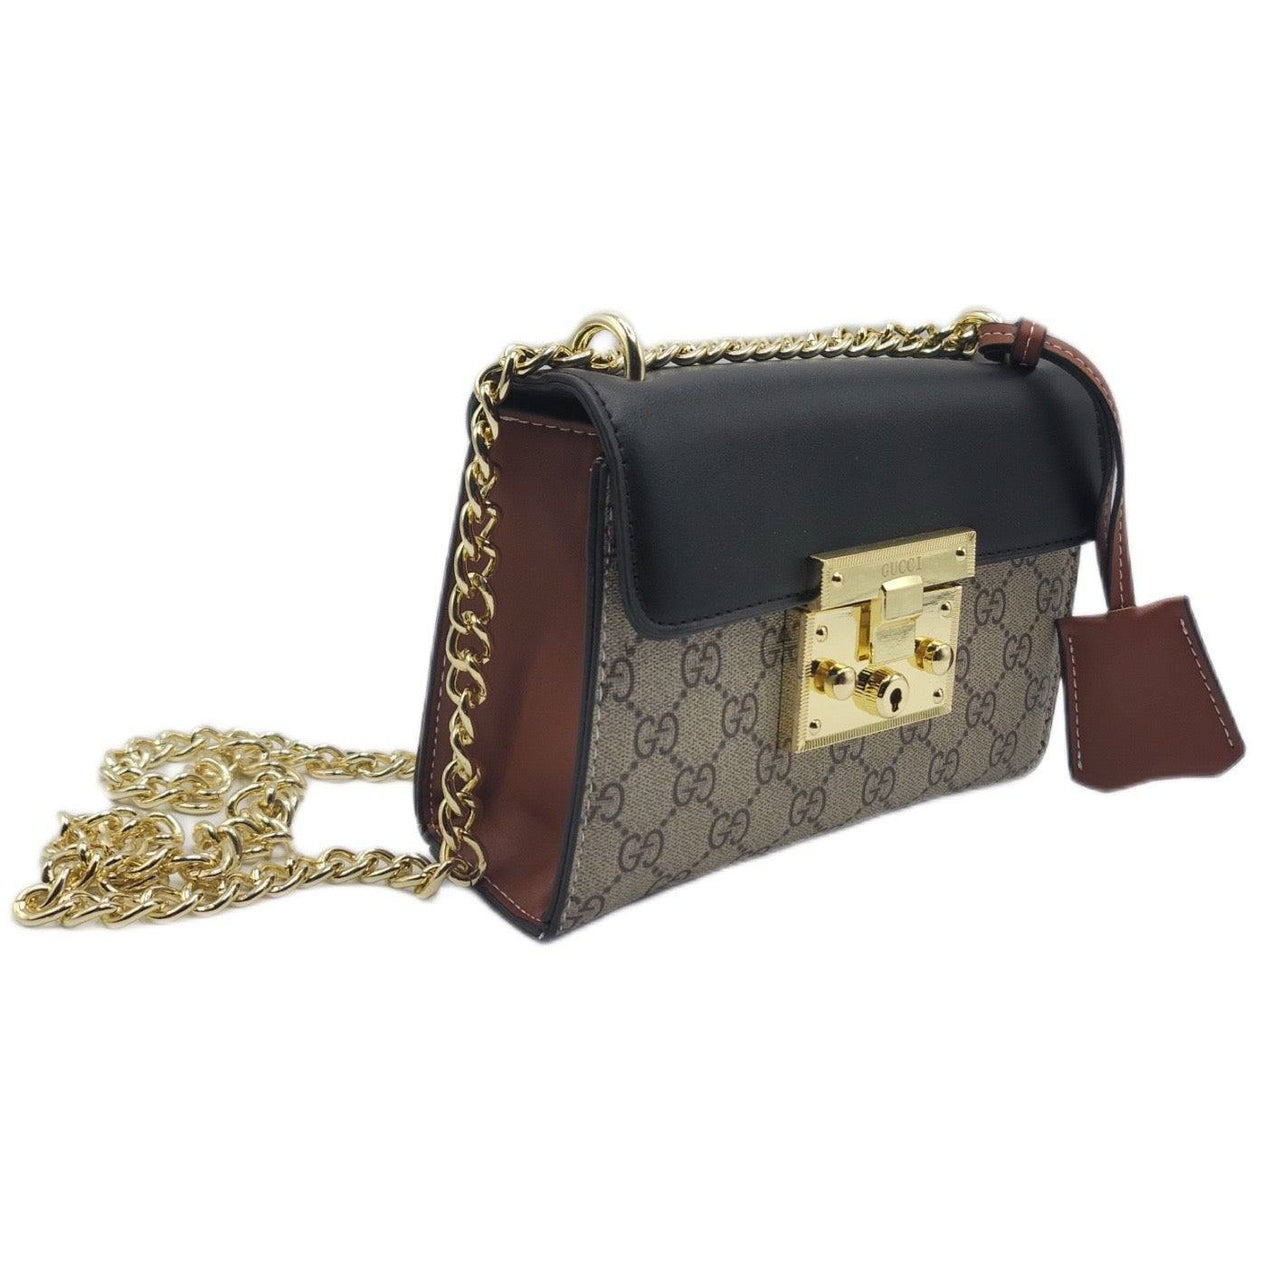 The Bag Couture Handbags, Wallets & Cases Gucci Crossbody Bag Classic Black